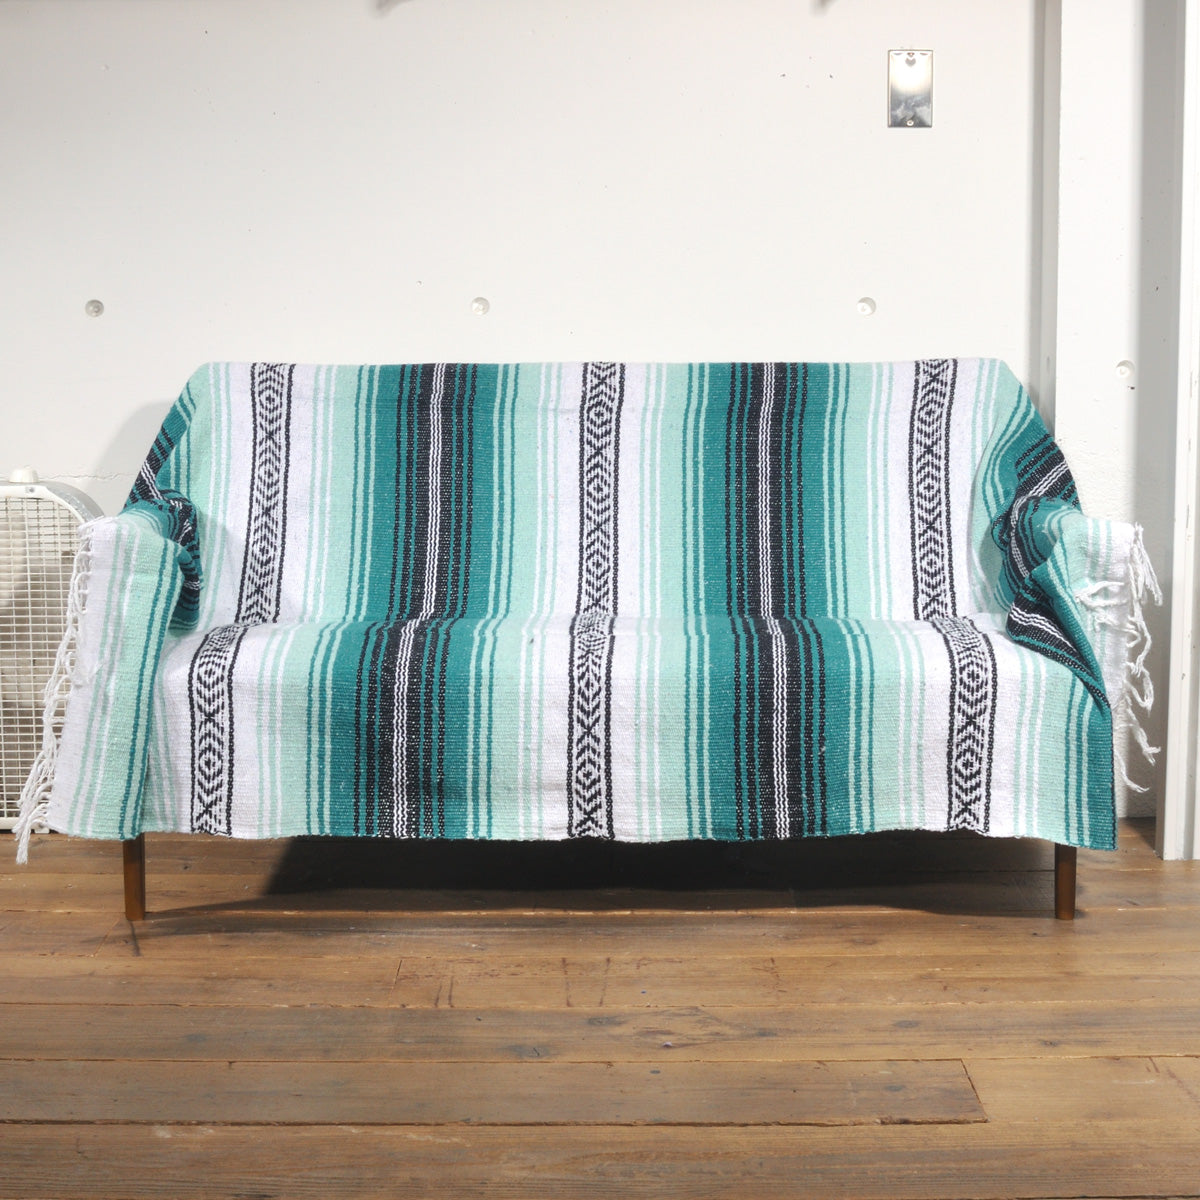 ラグフォレスト(Rug Forest)スタンダードファルサ メキシカンブランケット Standard Falsa Mexican Blanket[約185×135cm]TEAL/MINT